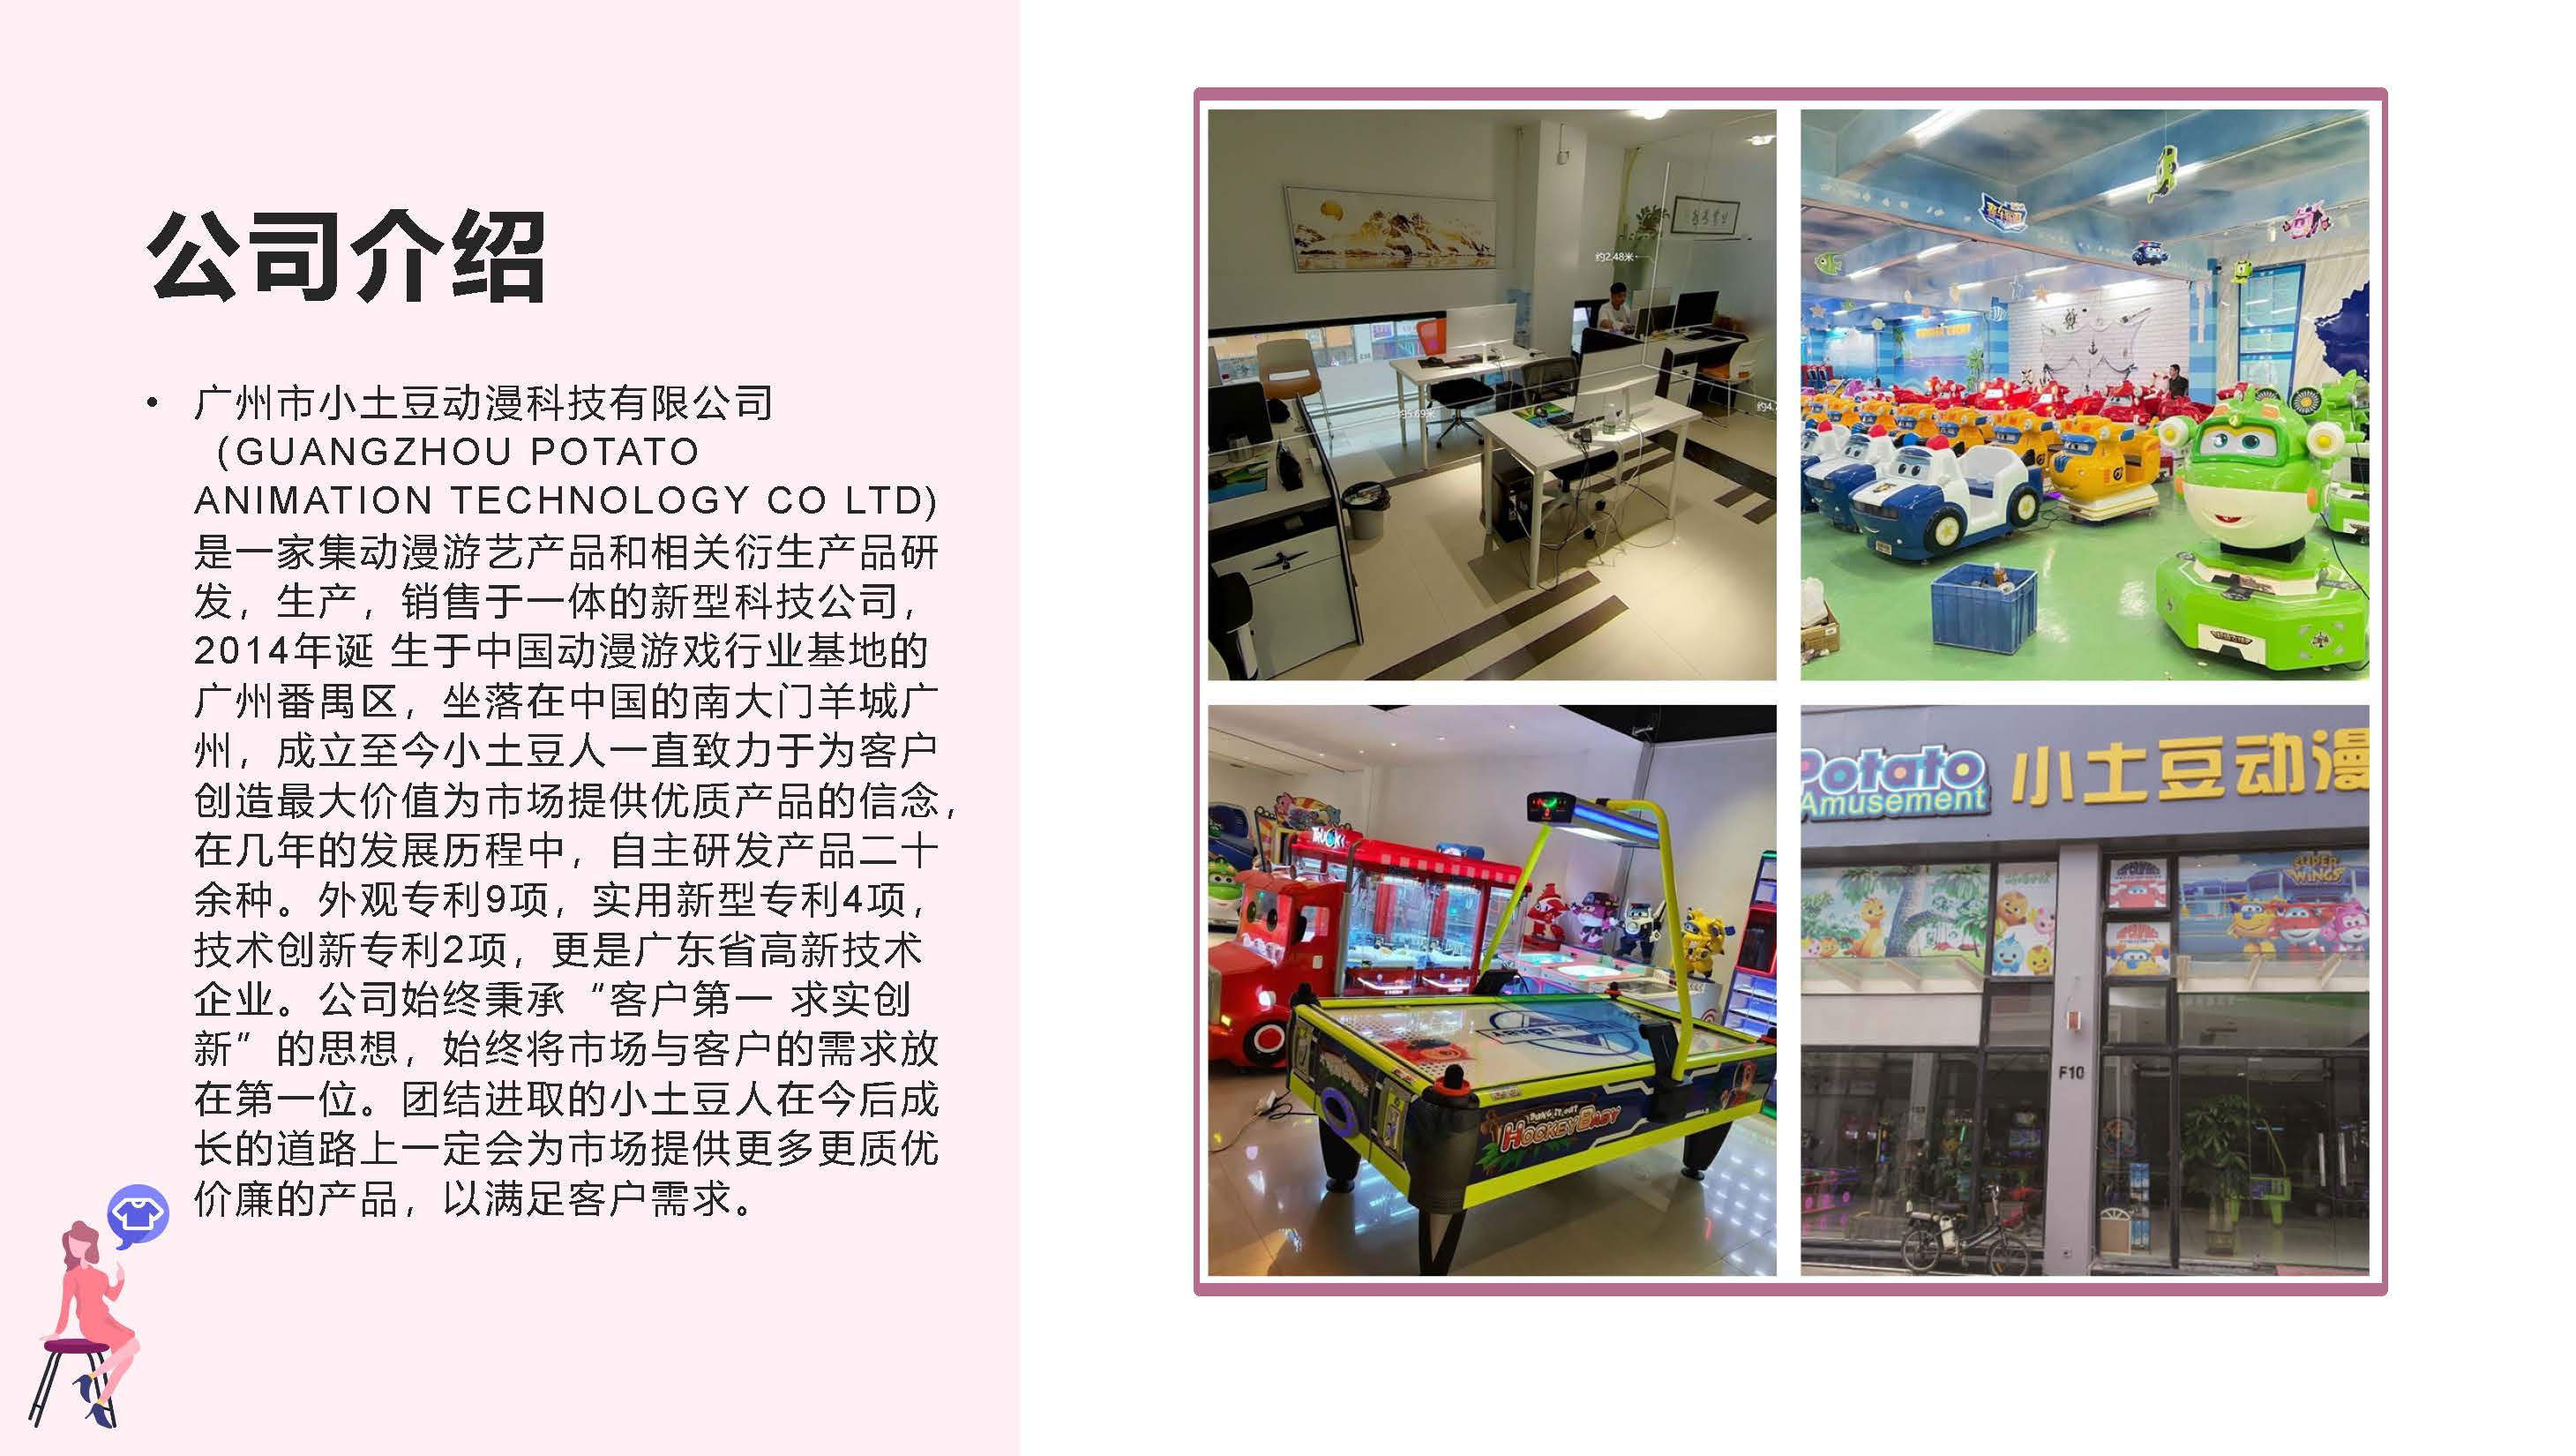 Super Wings Kiddie Rides-Jett Children's Amusement Equipment Mall Store Traffic Machine